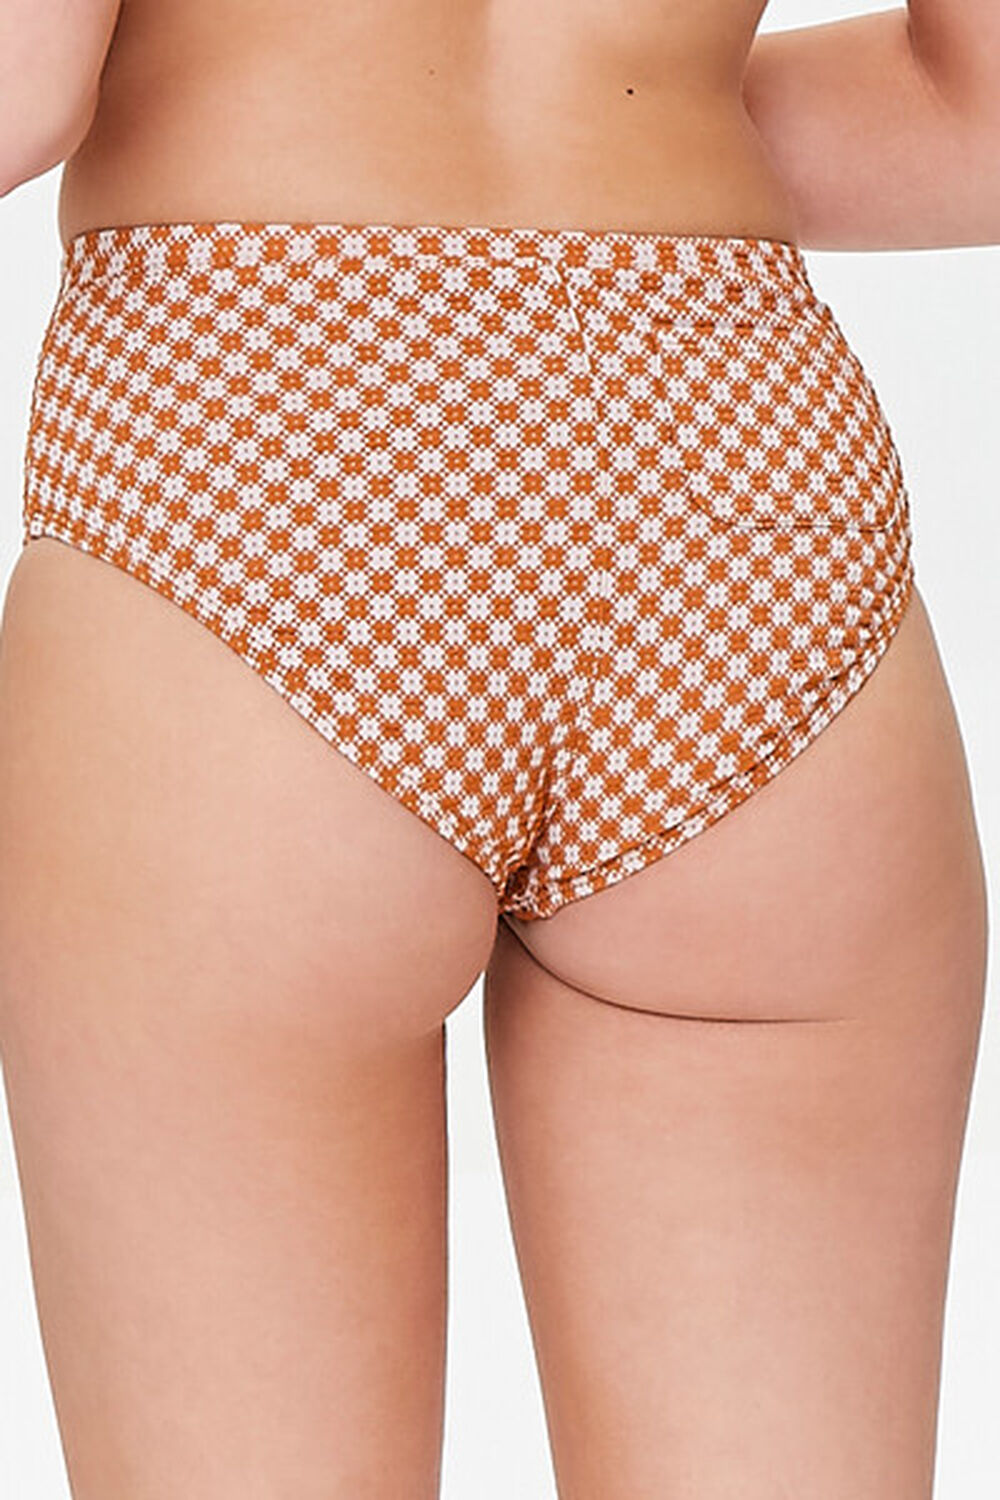 GINGER/IVORY Plaid Bikini Bottoms, image 3